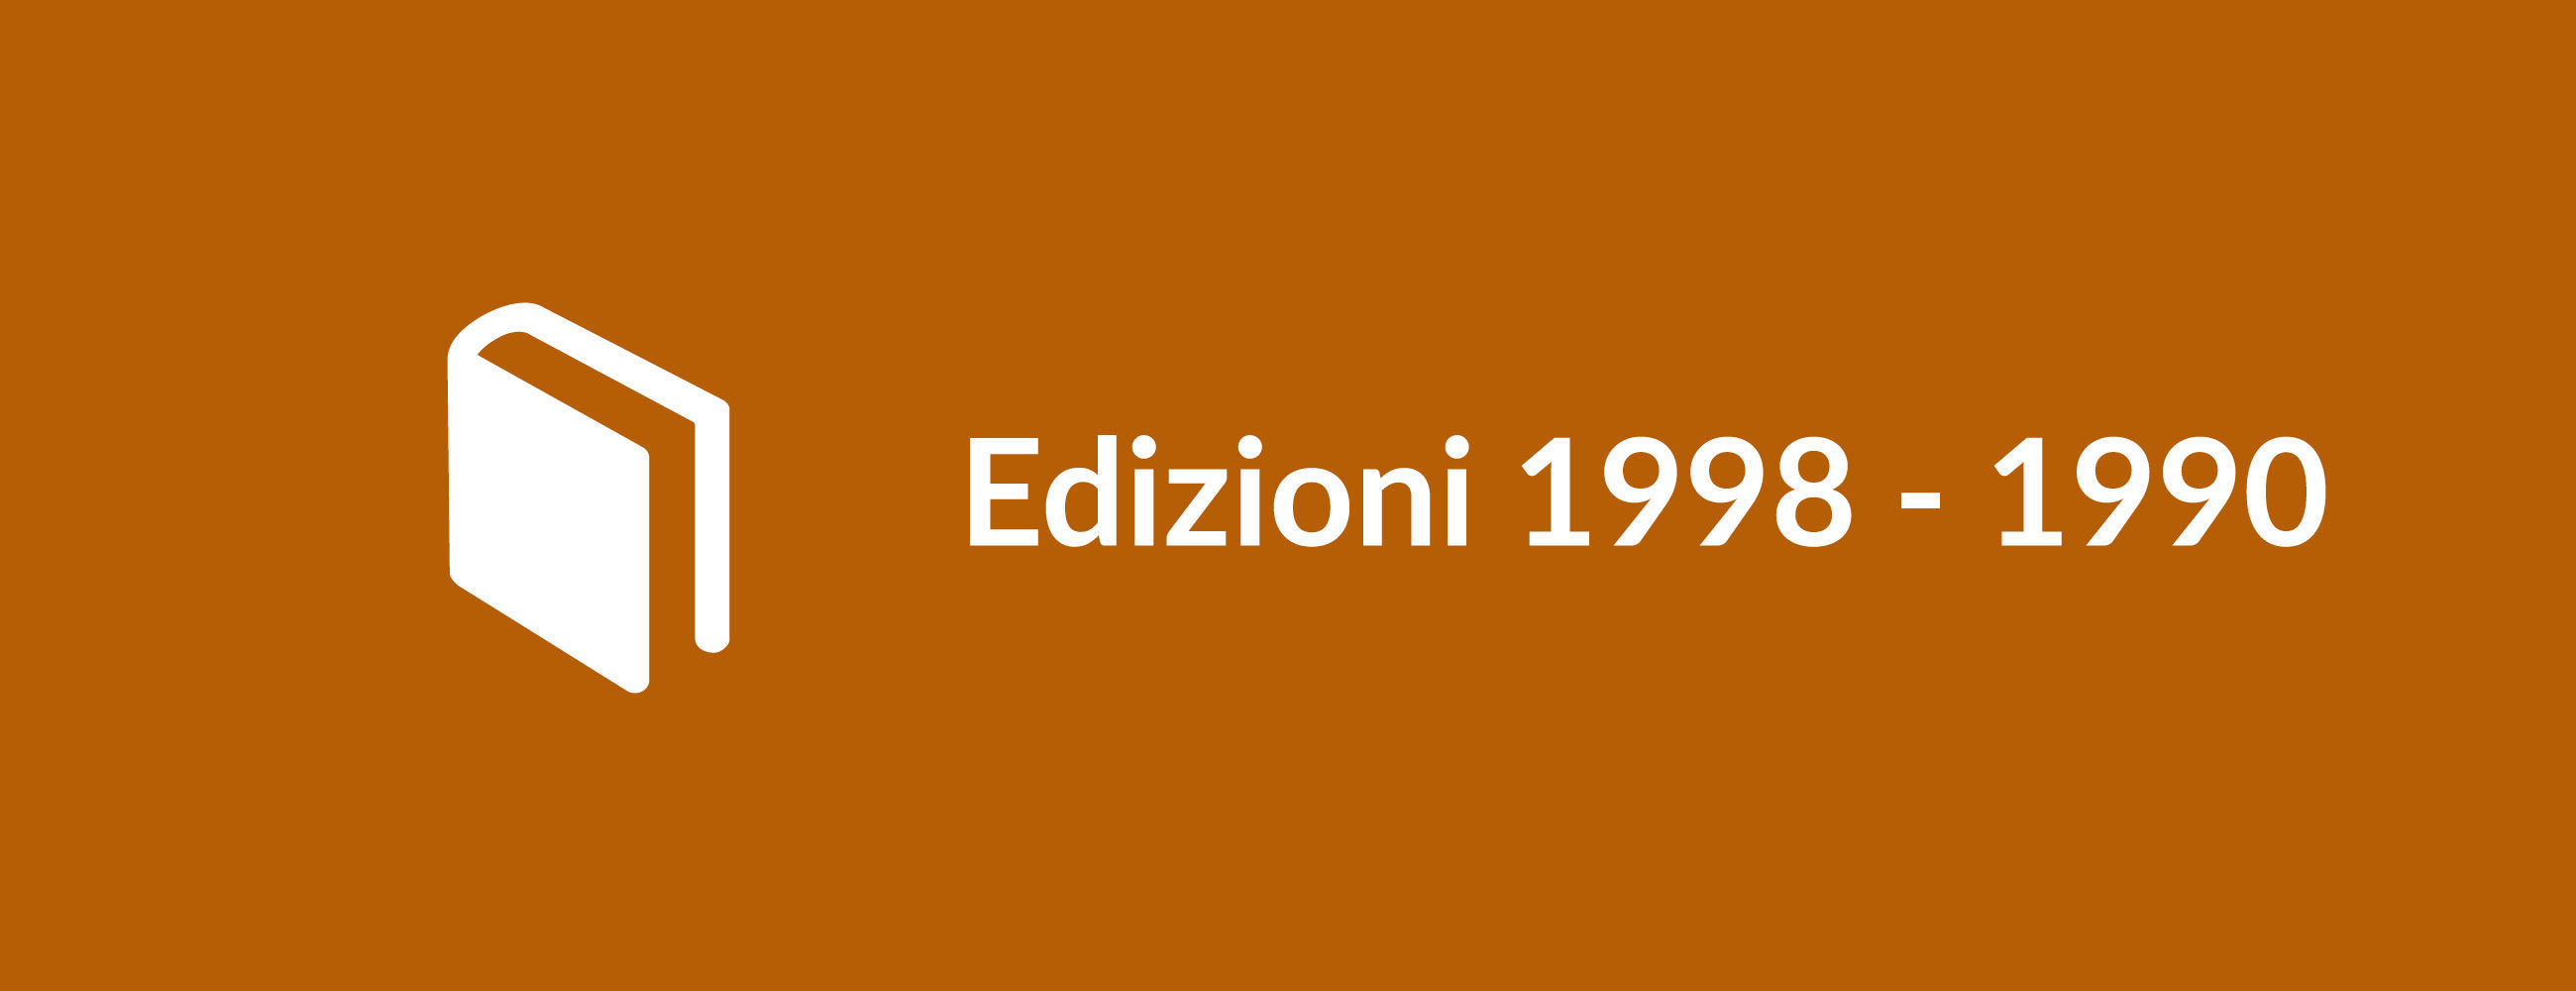 Edizioni 1998-1990